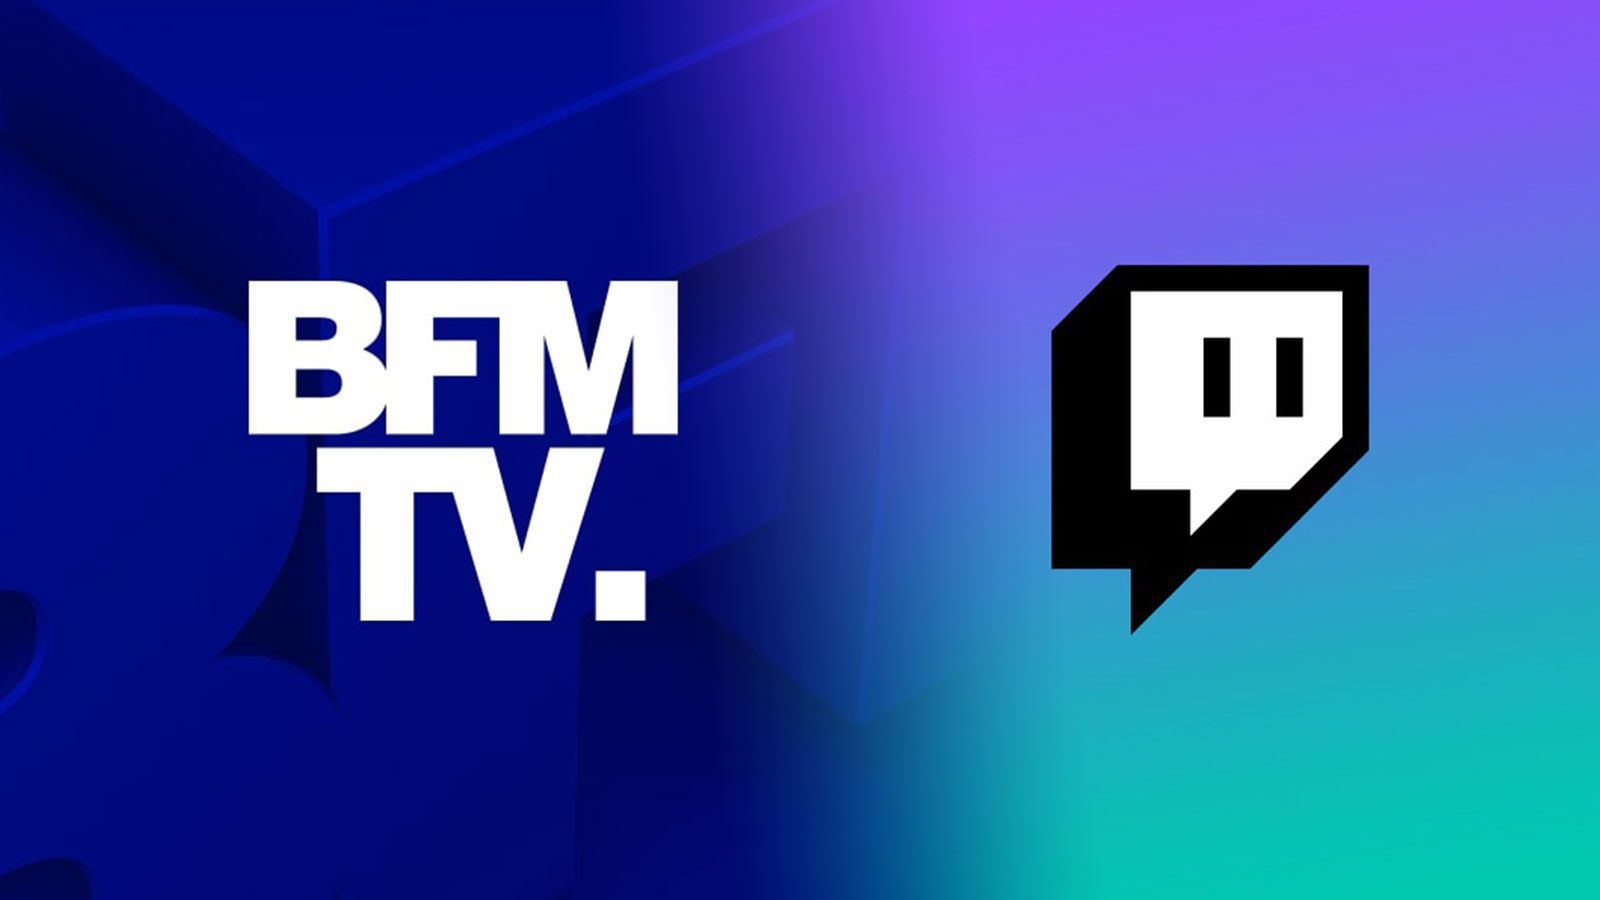 L'arrivée controversée de BFM TV sur Twitch met le feu à la twittosphère - Dexerto.fr